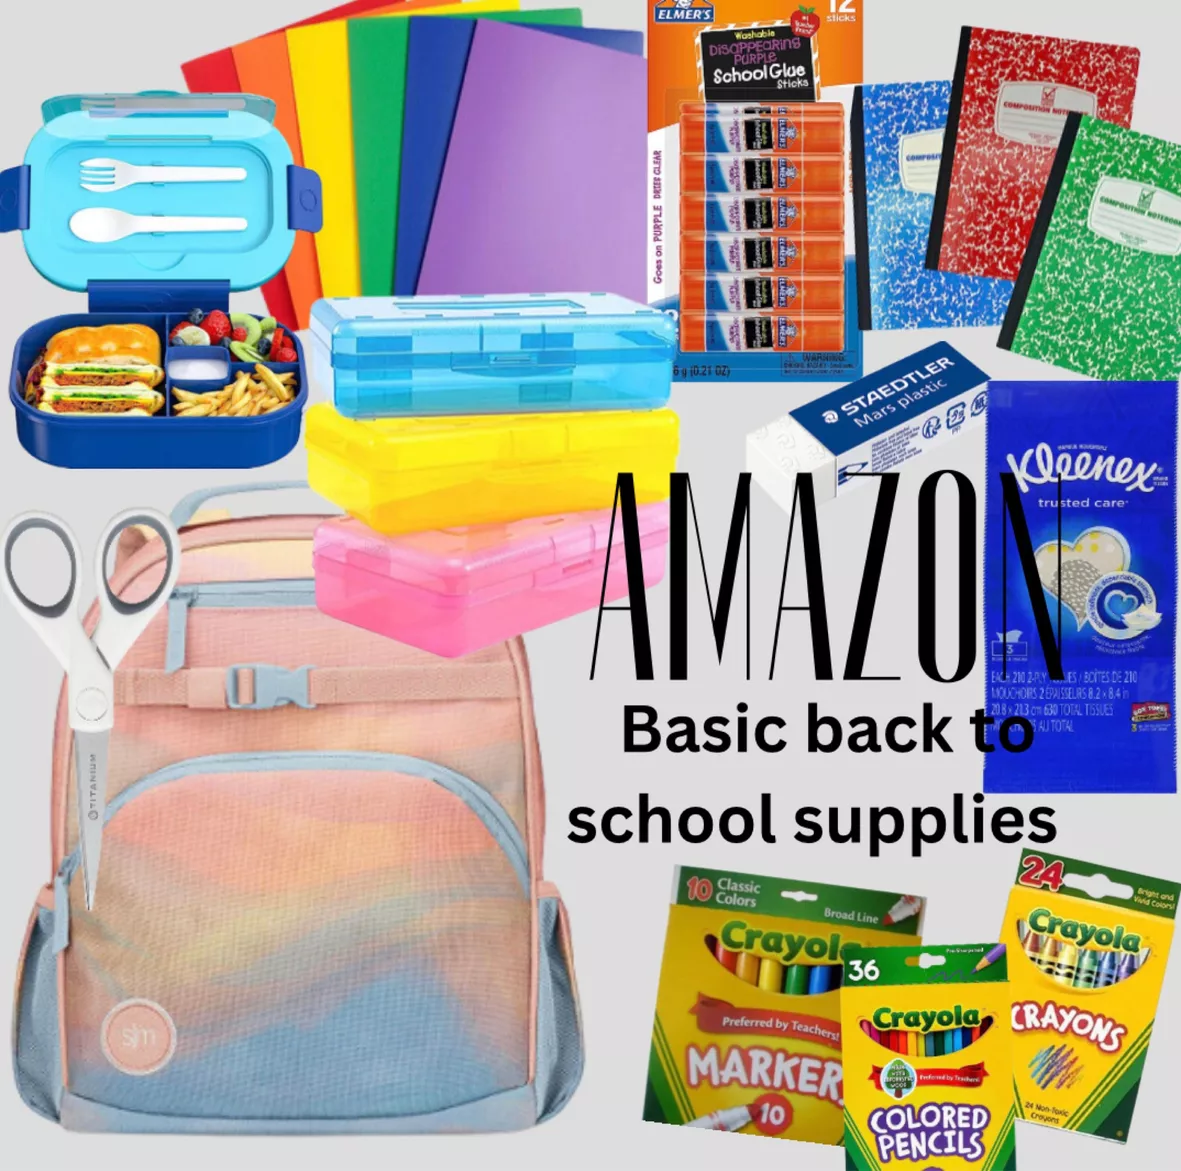 Simple Modern Toddler Backpack for School Boys Girls